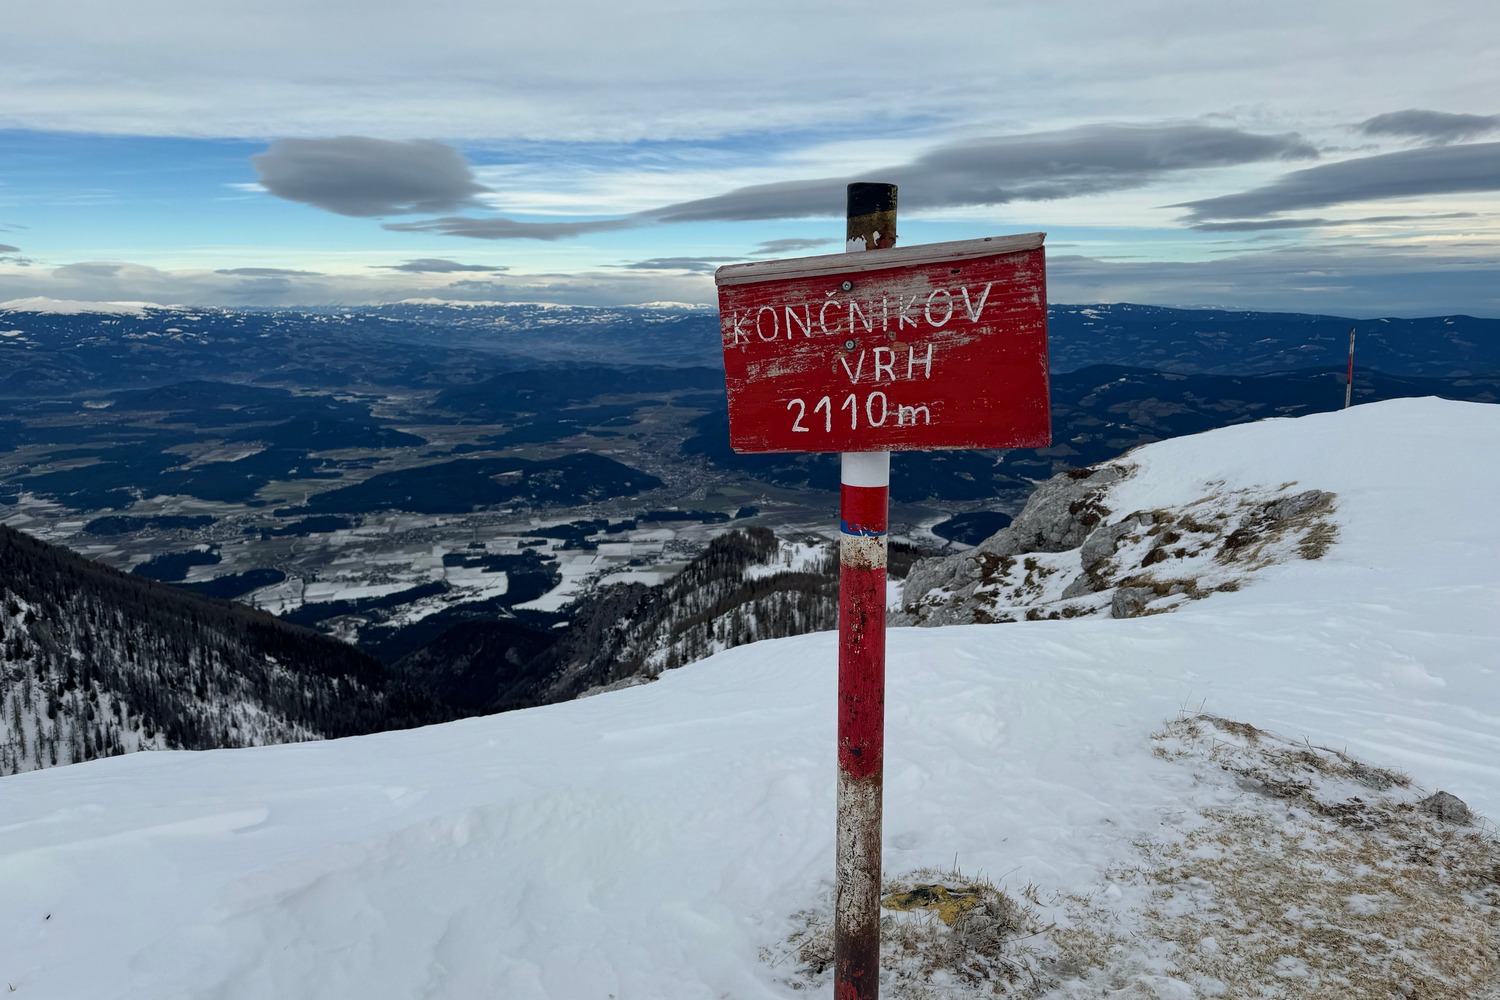 Skitour Knieps/Končnikov vrh (2.110)